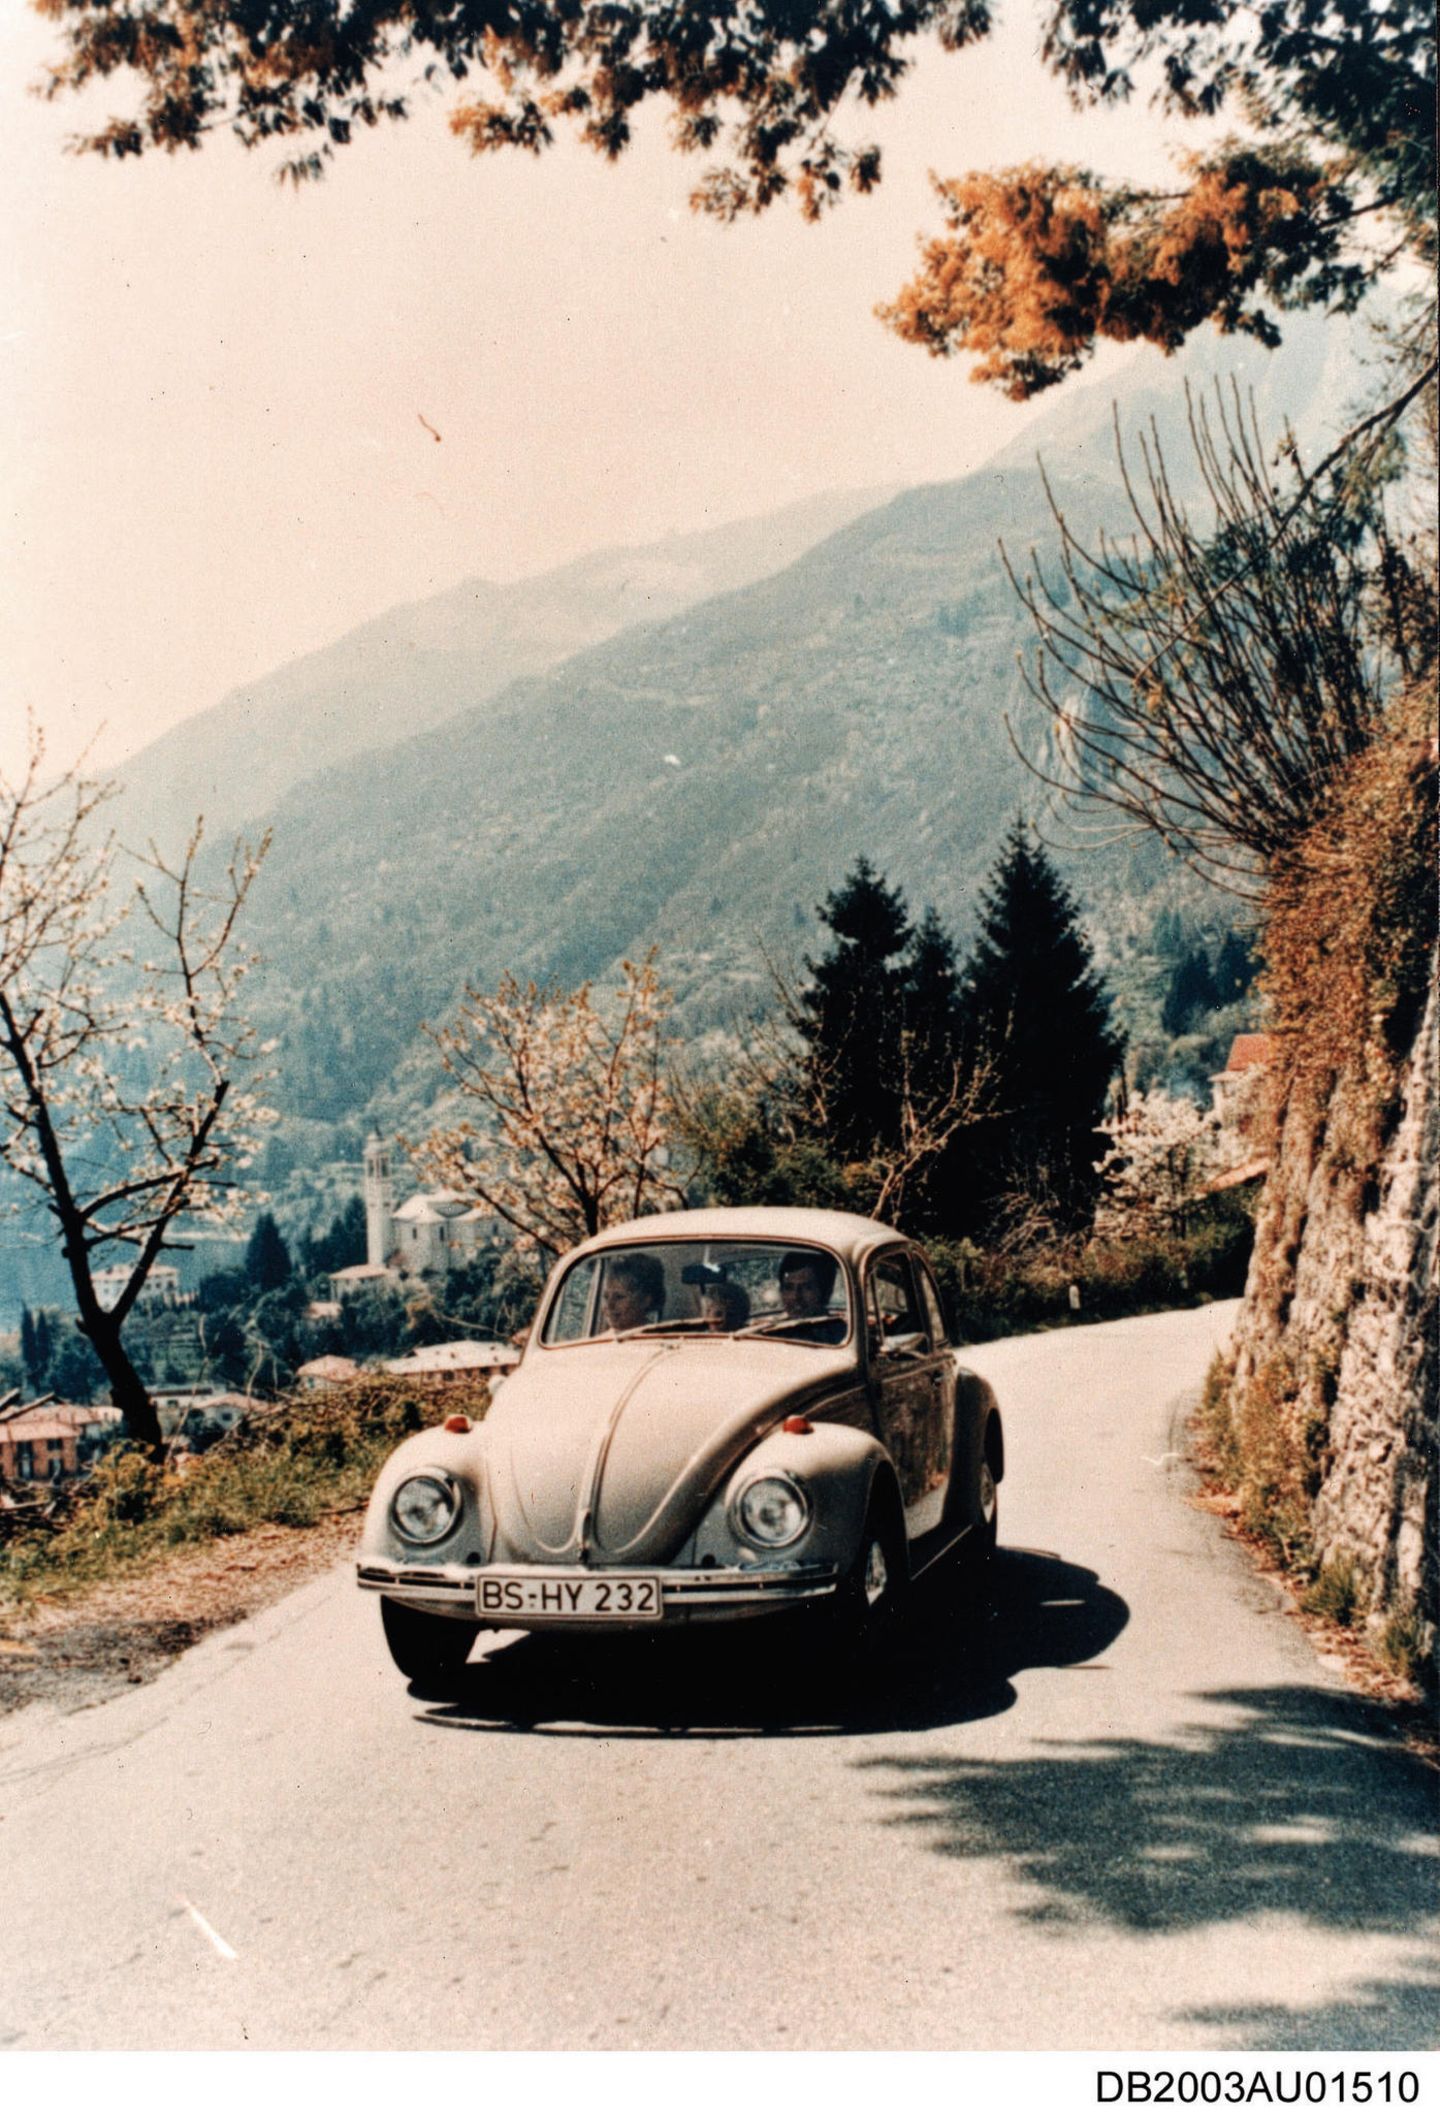 Ende der VW-Käfer-Produktion in Deutschland vor 45 Jahren – eine  Automobilkarriere in Bildern